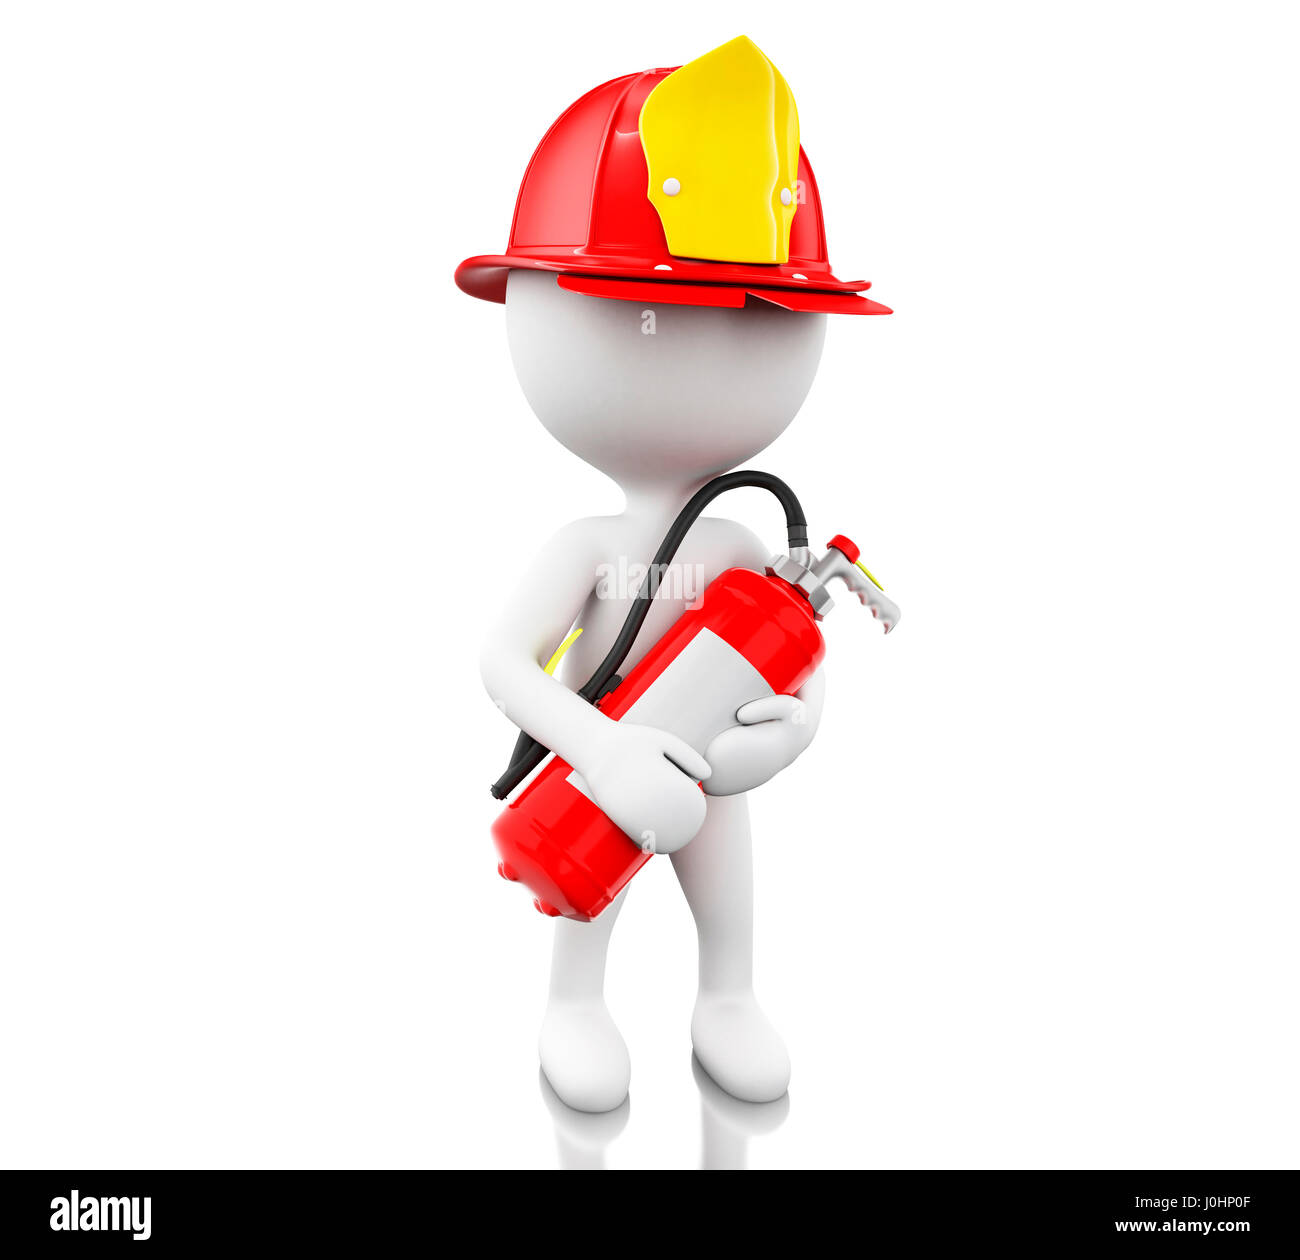 Illustration 3d. Pompier avec helment et extincteur. Concept de sécurité. Isolé sur fond blanc Banque D'Images